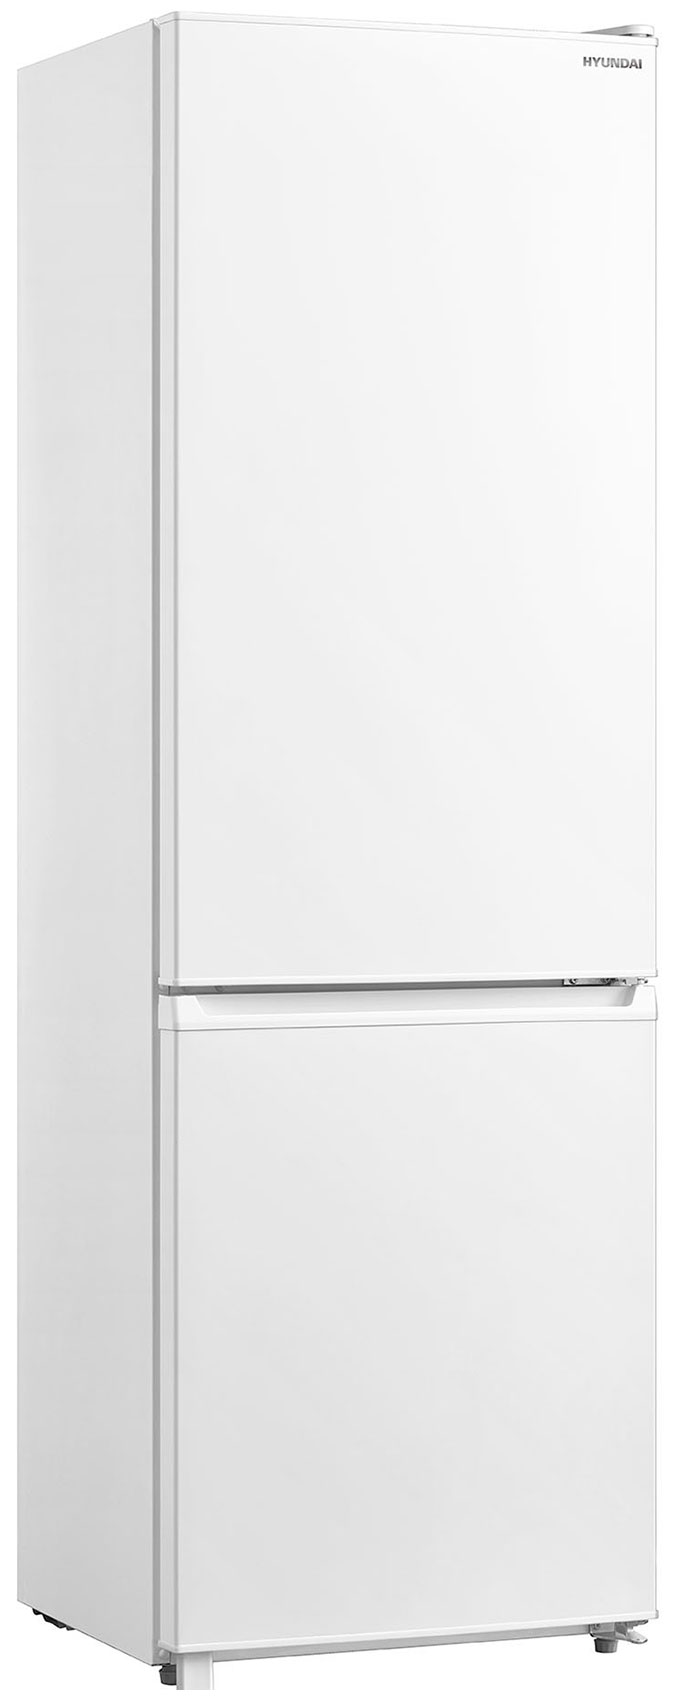 цена Двухкамерный холодильник Hyundai CC3091LWT белый